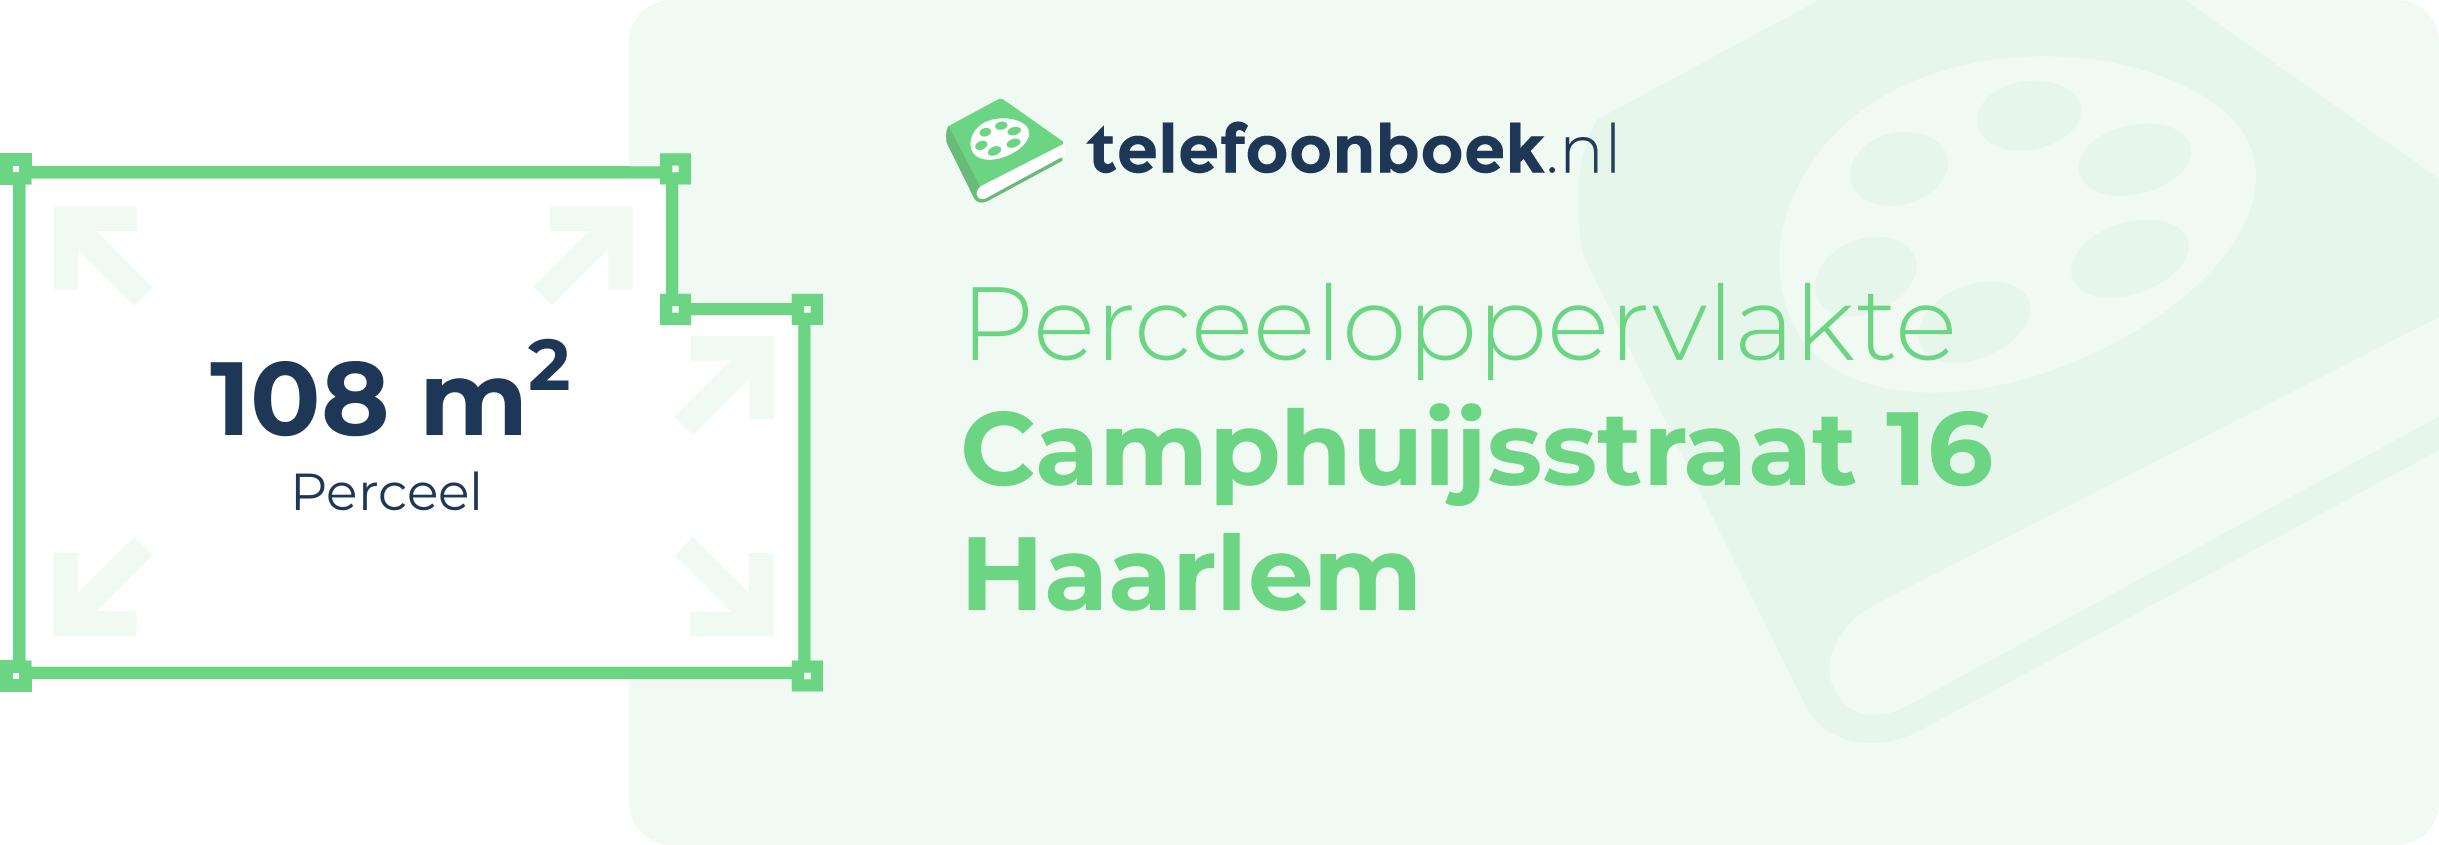 Perceeloppervlakte Camphuijsstraat 16 Haarlem